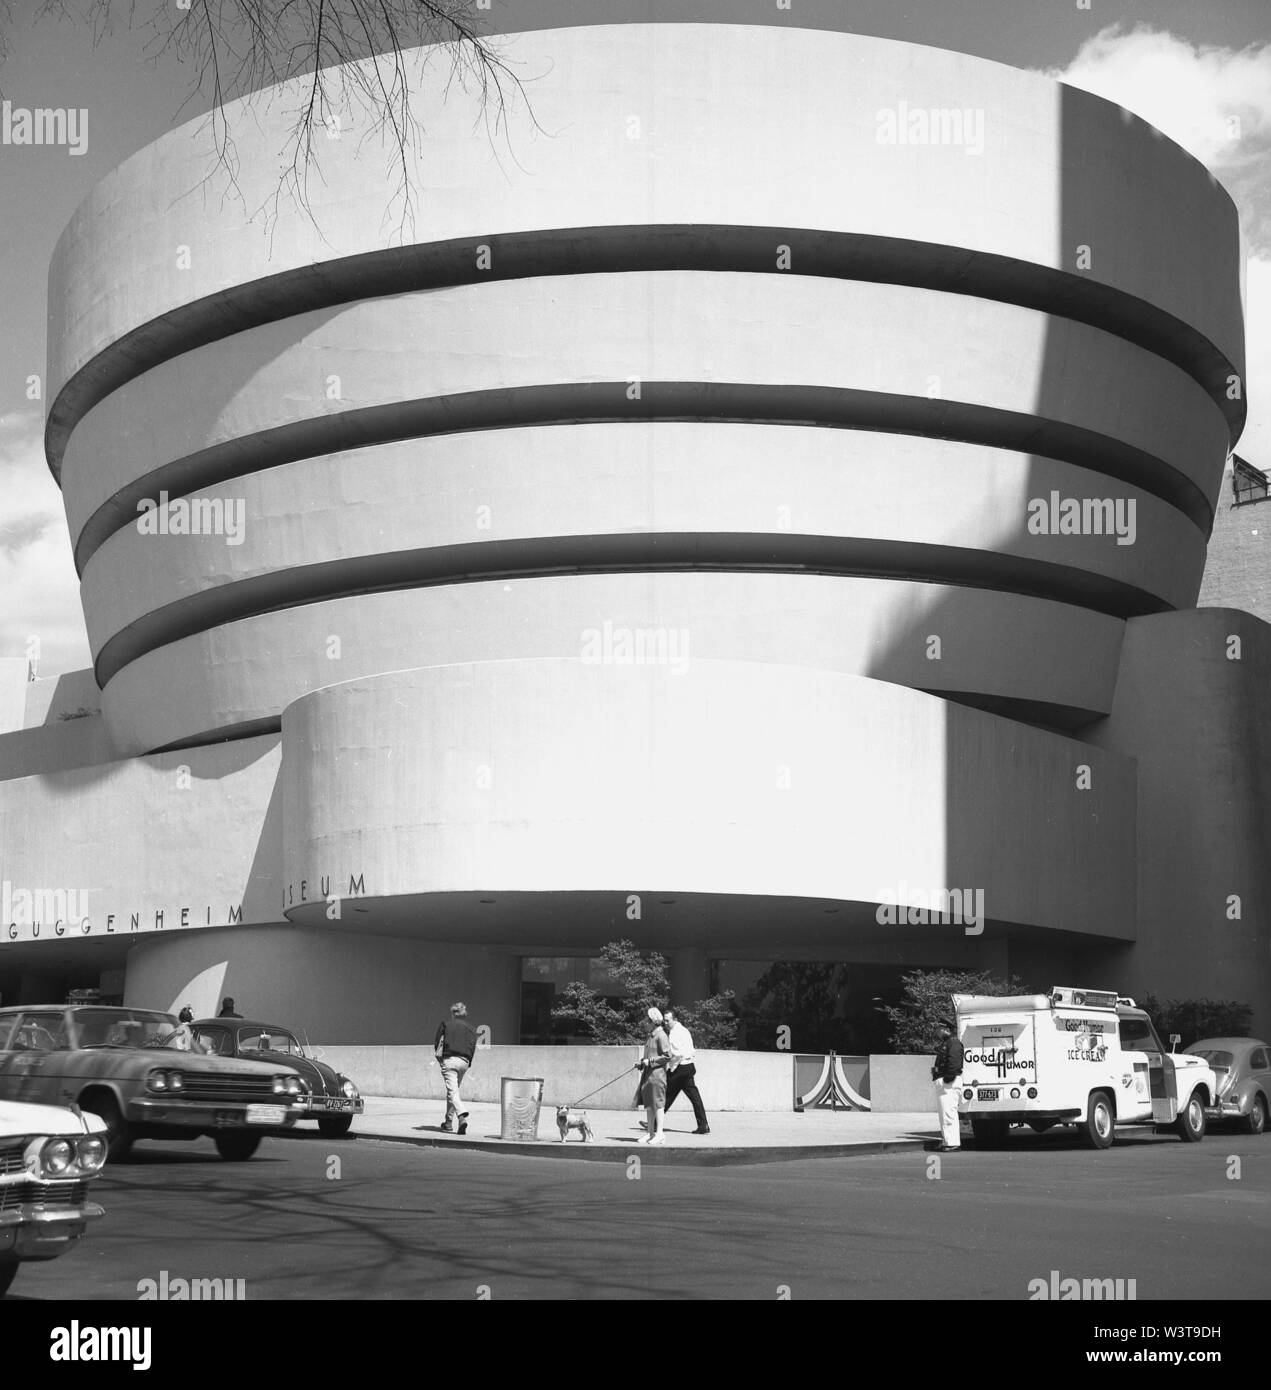 1960, historische, Äußere des Guggenheim Museum, Manhattan, New York, USA. Von Frank Lloyd Wright, dem zylindrischen Gebäude - Breiter oben als unten im Jahr 1959 eröffnet und gilt als ein Wahrzeichen der Architektur des 20. Jahrhunderts, obwohl, wie ein idealer Ort, um Gemälde und Kunstwerke, die Spirale, vertikale Design hat seine Kritiker. Es war das einzige Museum, entworfen von Wright. Stockfoto